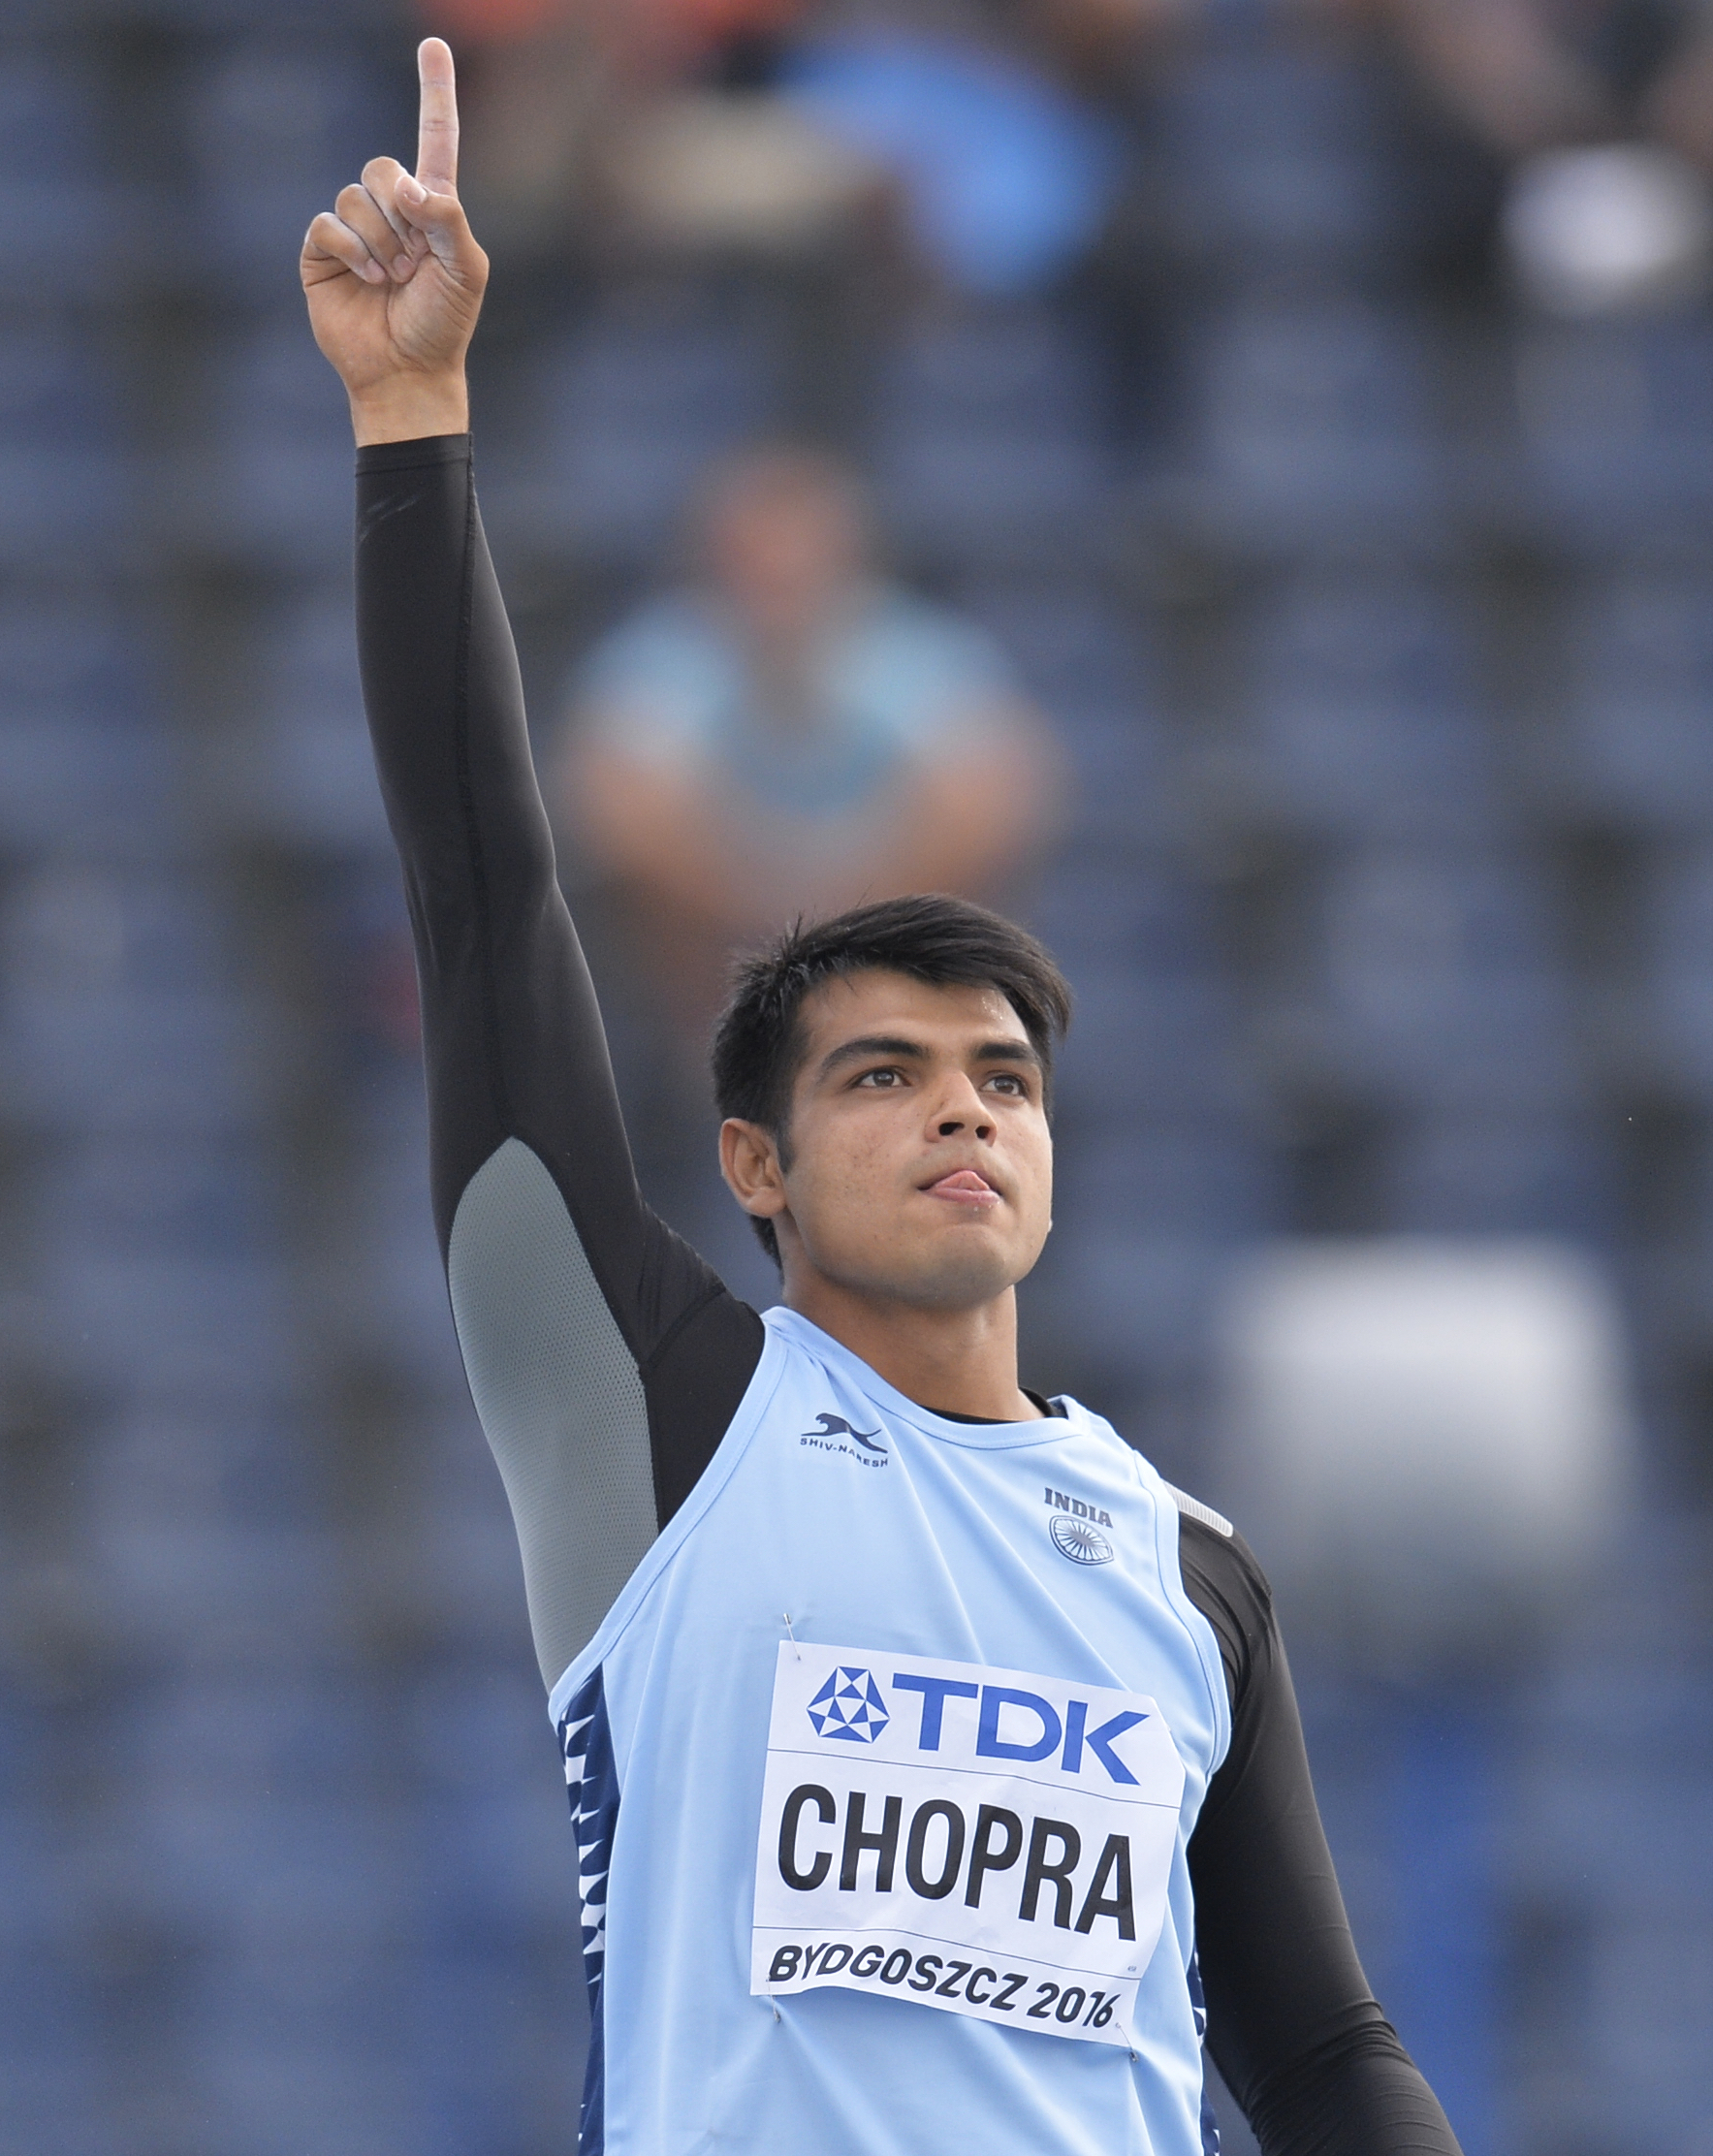 Neeraj Chopra bags gold in Javelin throw in Sotteville Athletics meet